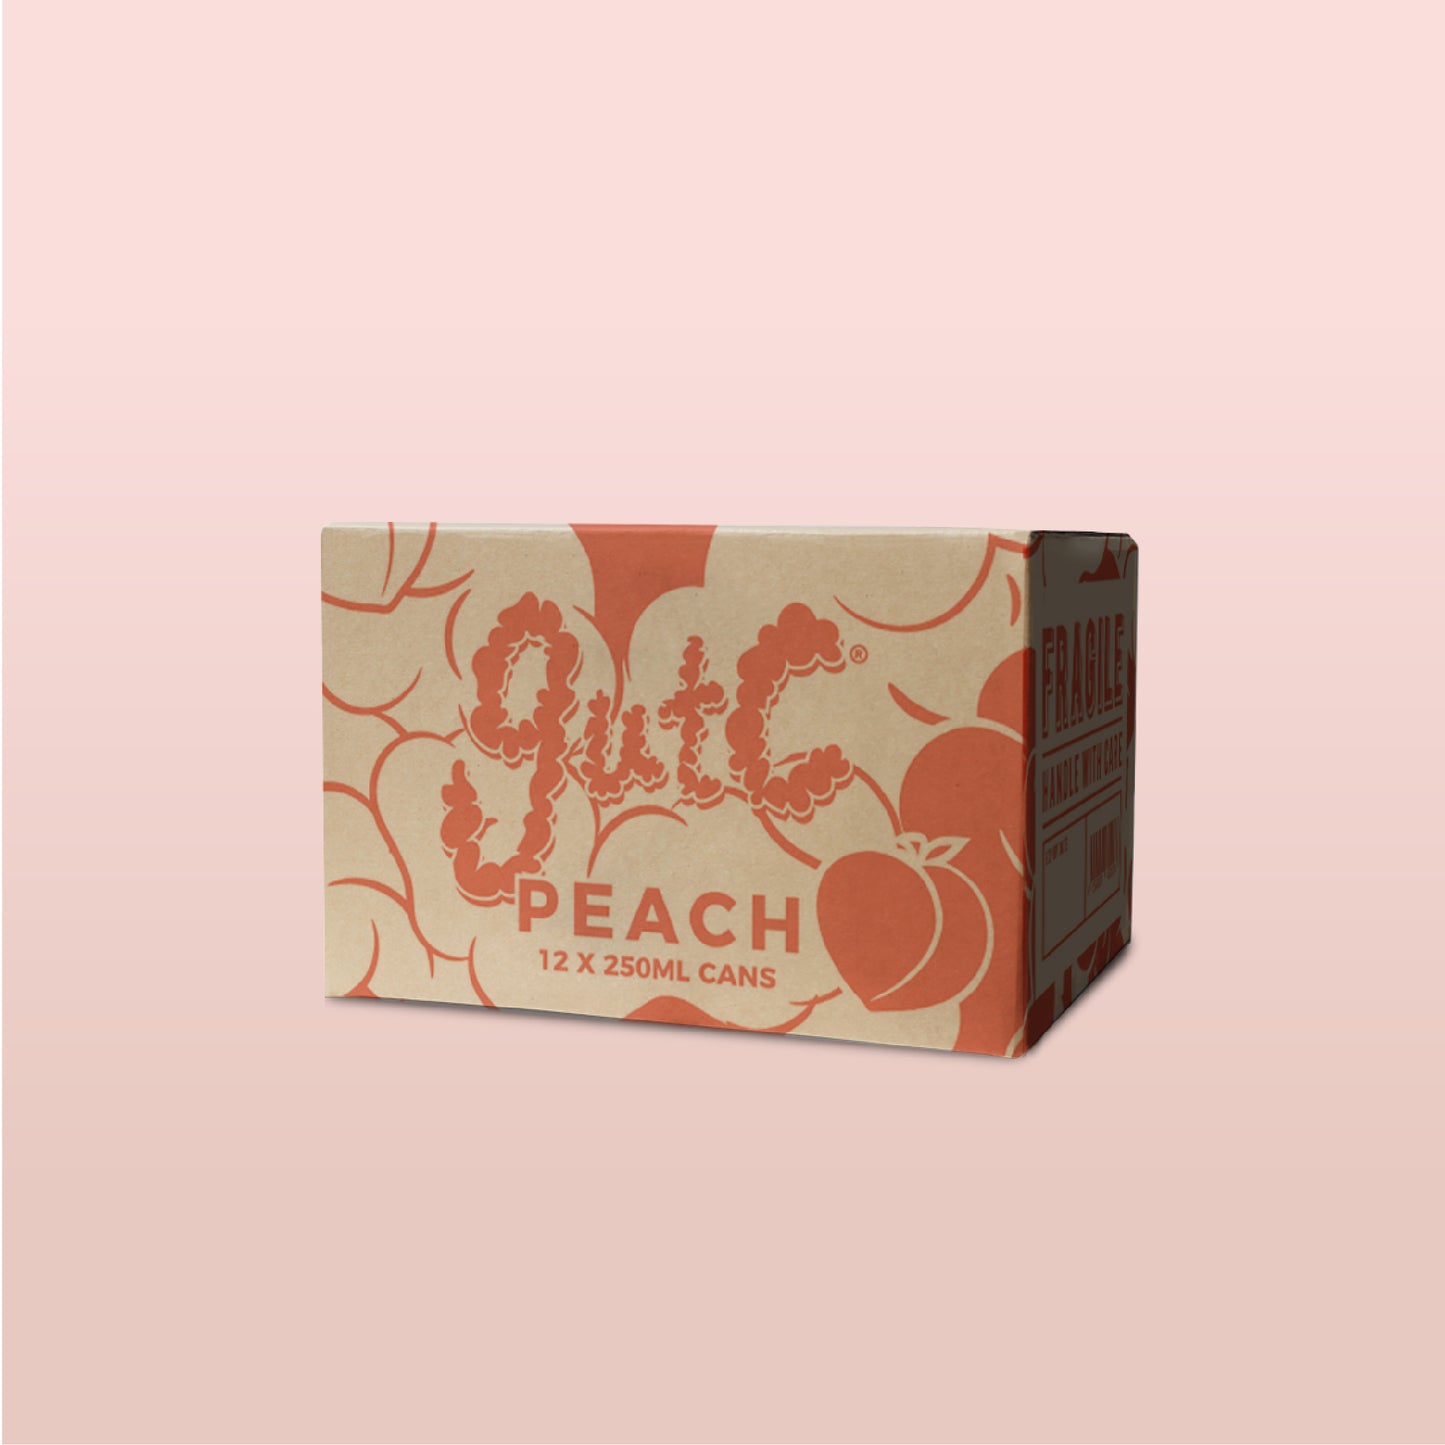 gutC Peach